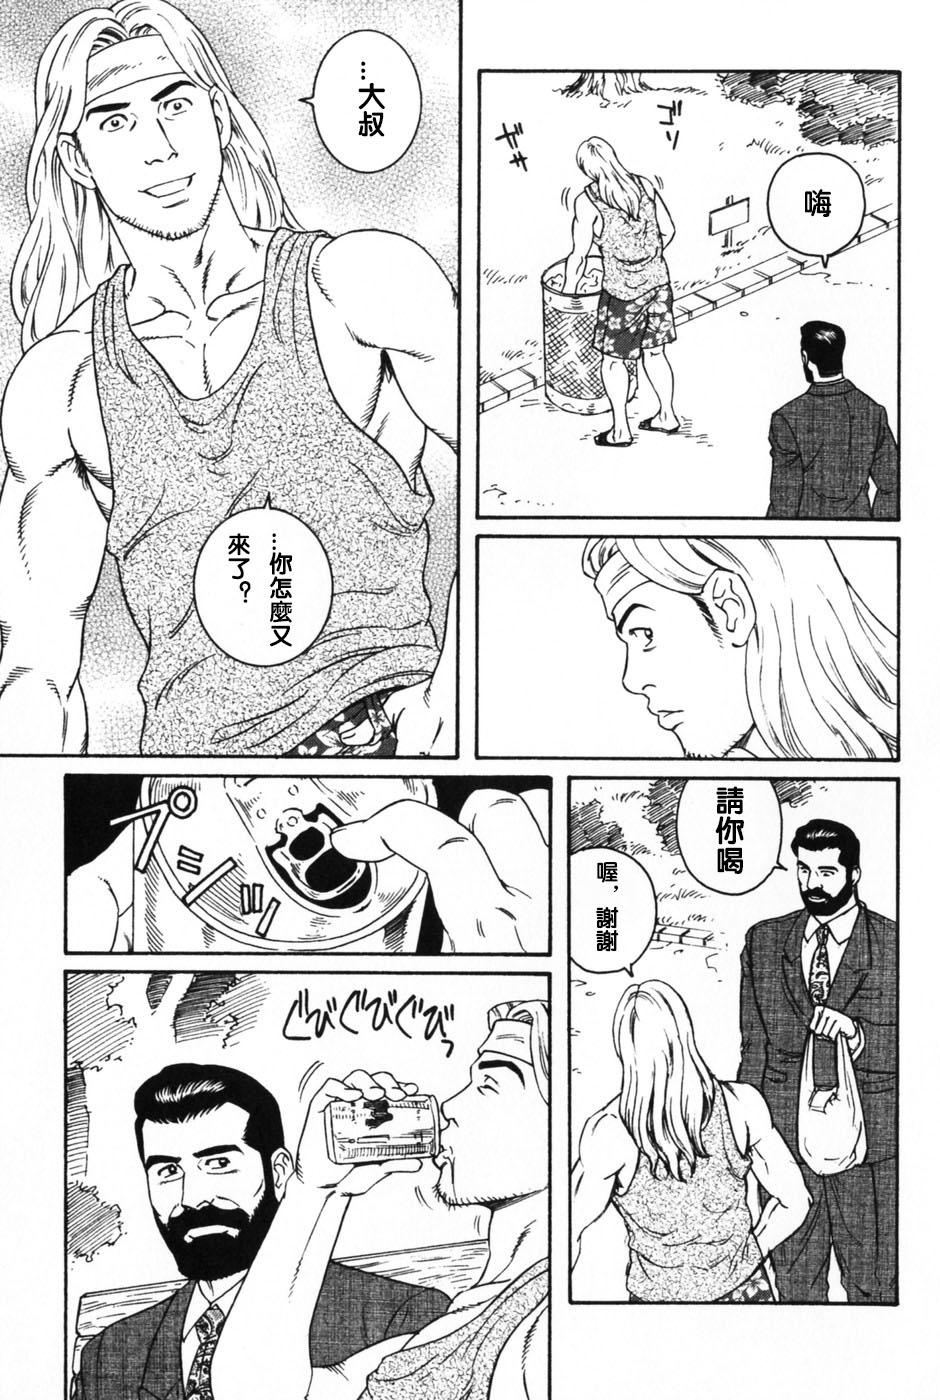 Uncut 神経性胃炎 Forwomen - Page 3